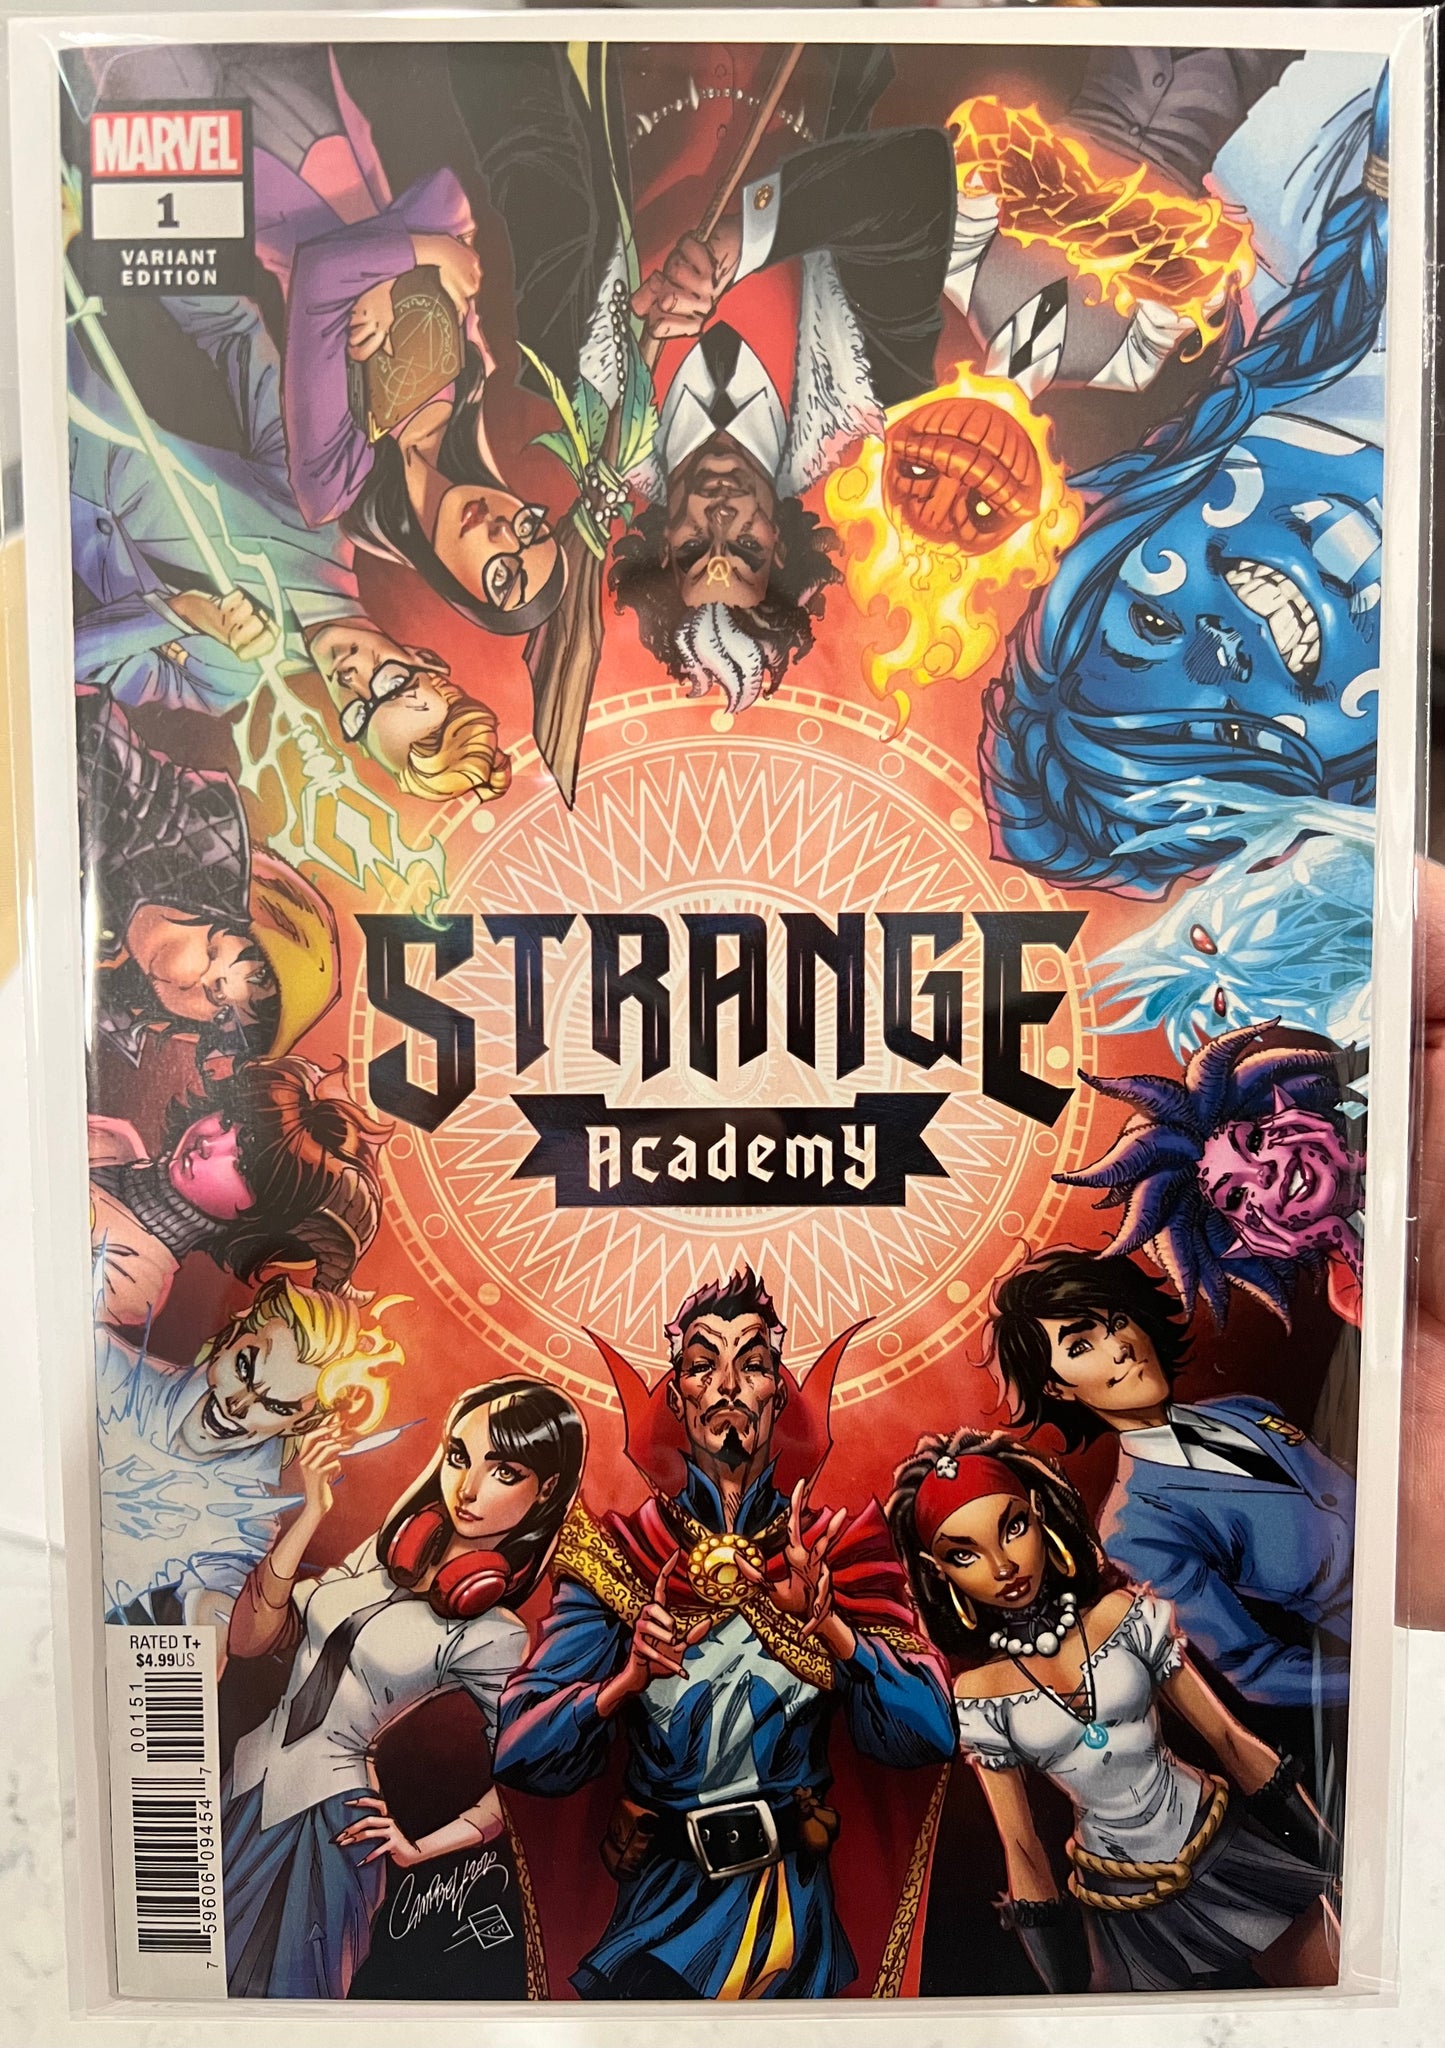 Strange Academy (Marvel, 2020) J Scott Campbell Variant